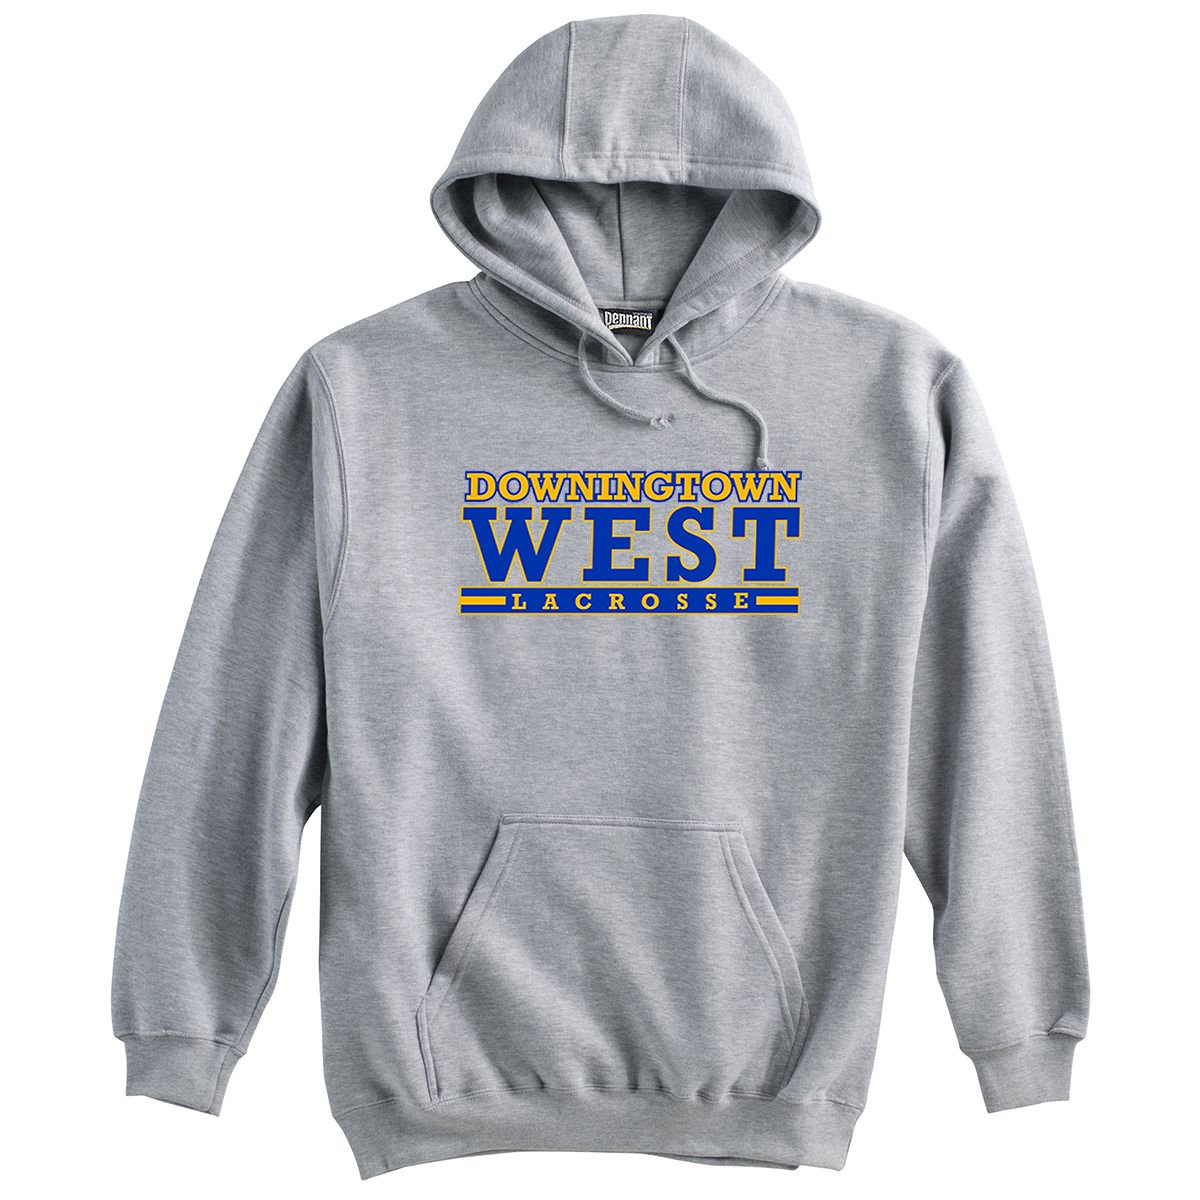 Downingtown West Lacrosse Sweatshirt